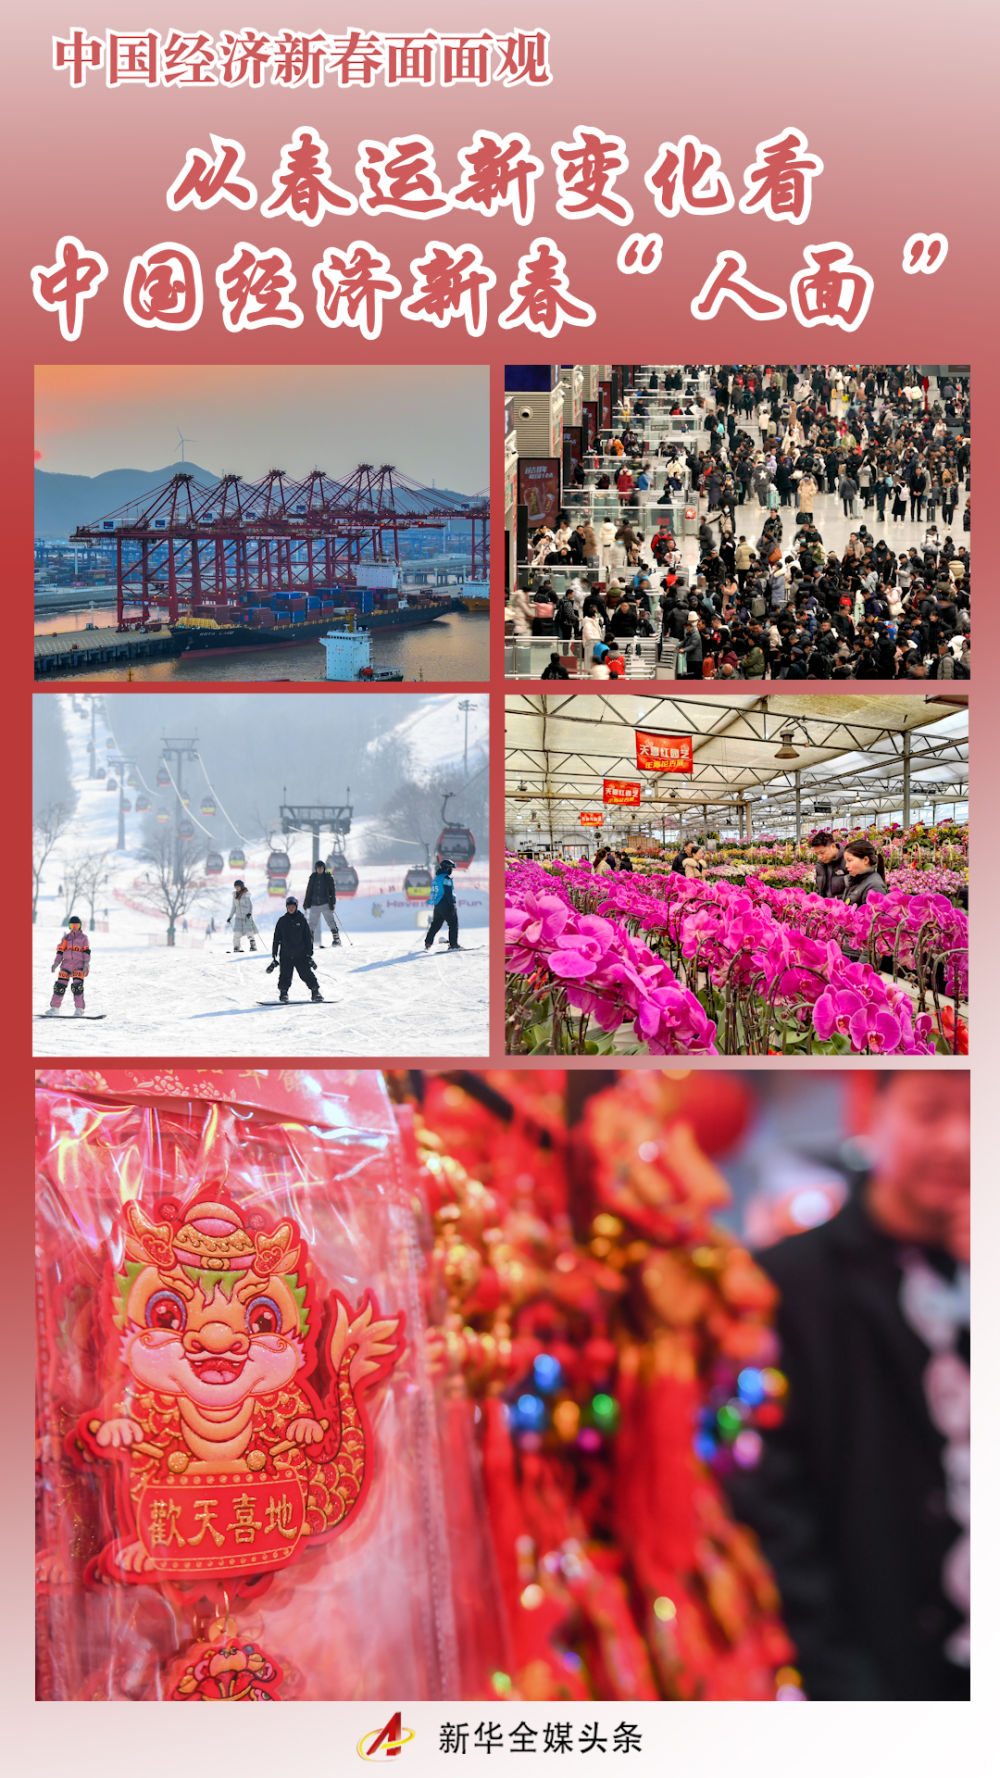 从春运新变化看中国经济新春“人面